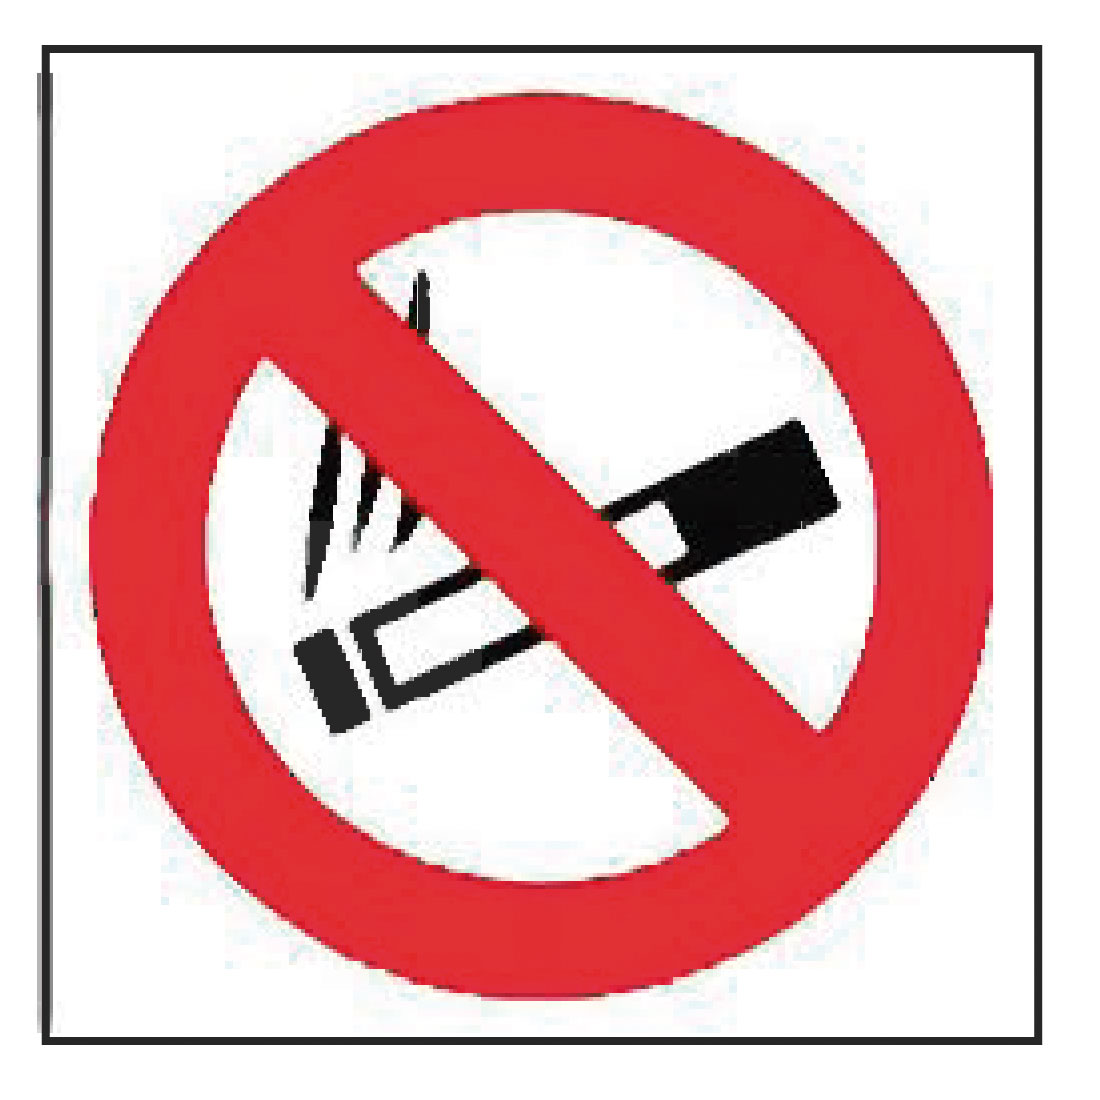 Prohibido fumar - Comunidad de Madrid